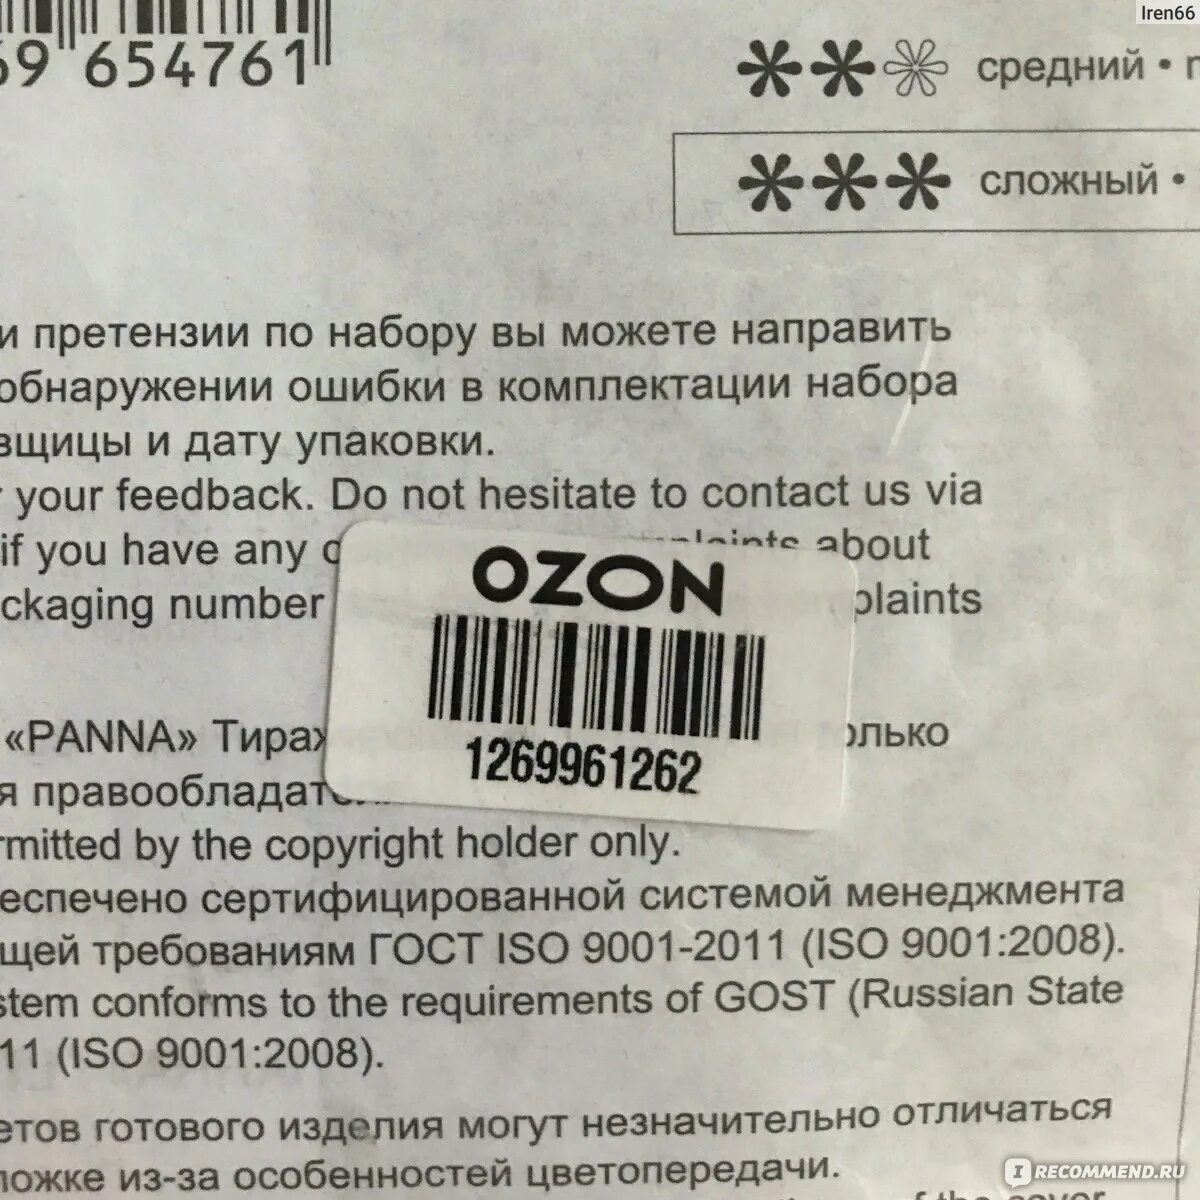 Как передать штрих код озона. Этикетка на товар для озона. Штрихкод Озон требования. OZON этикетка штрих код. Требования к этикетке Озон.